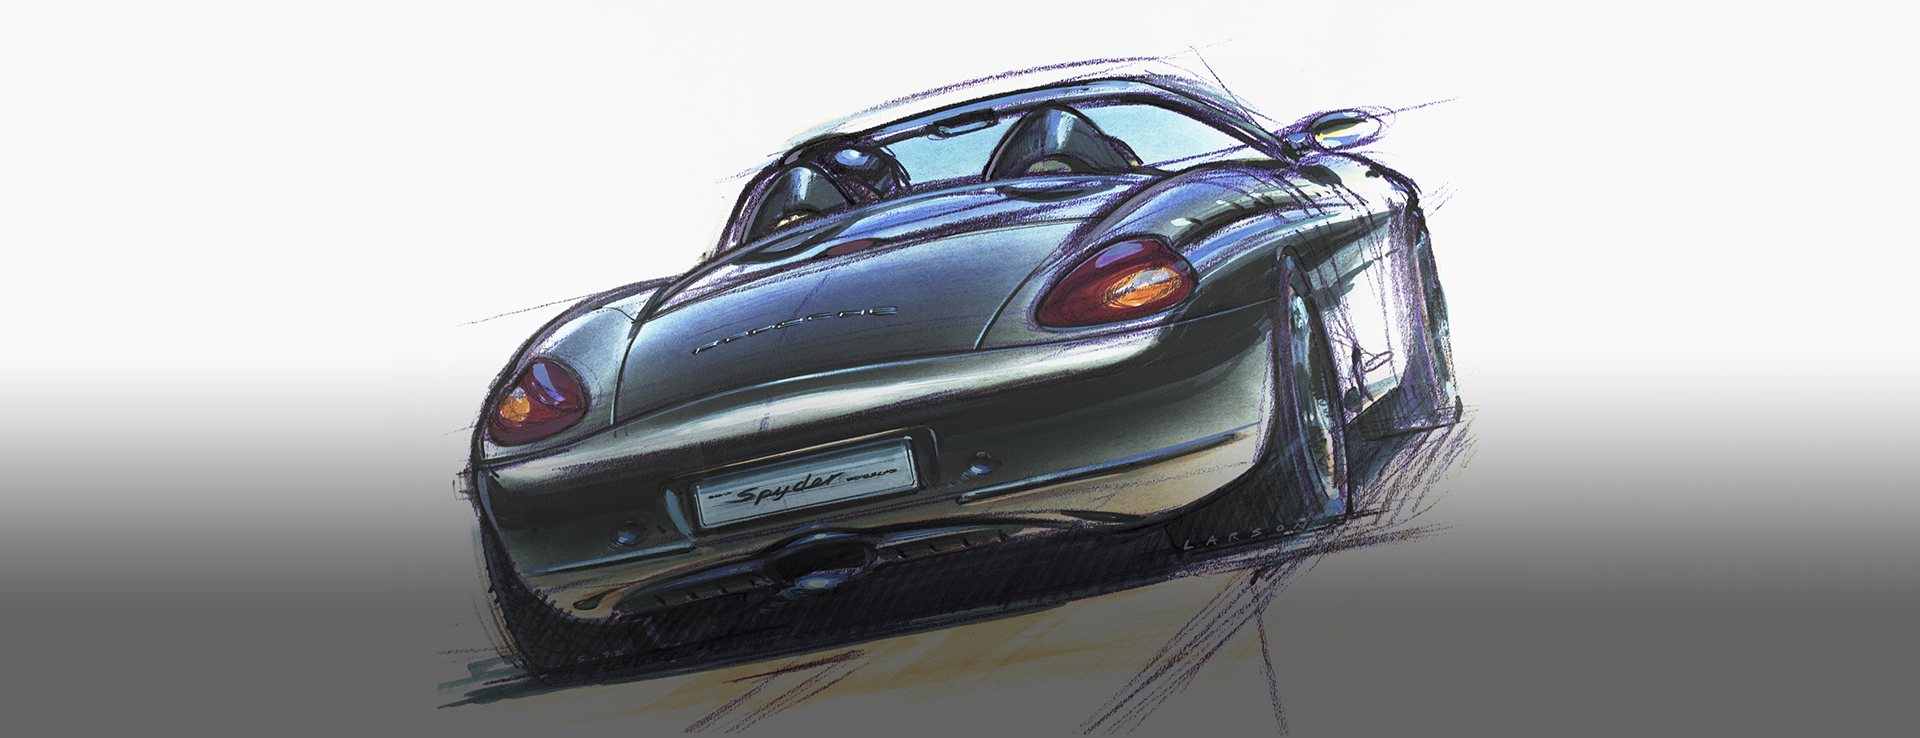 Colour pencil design sketch of rear view of Porsche Boxster